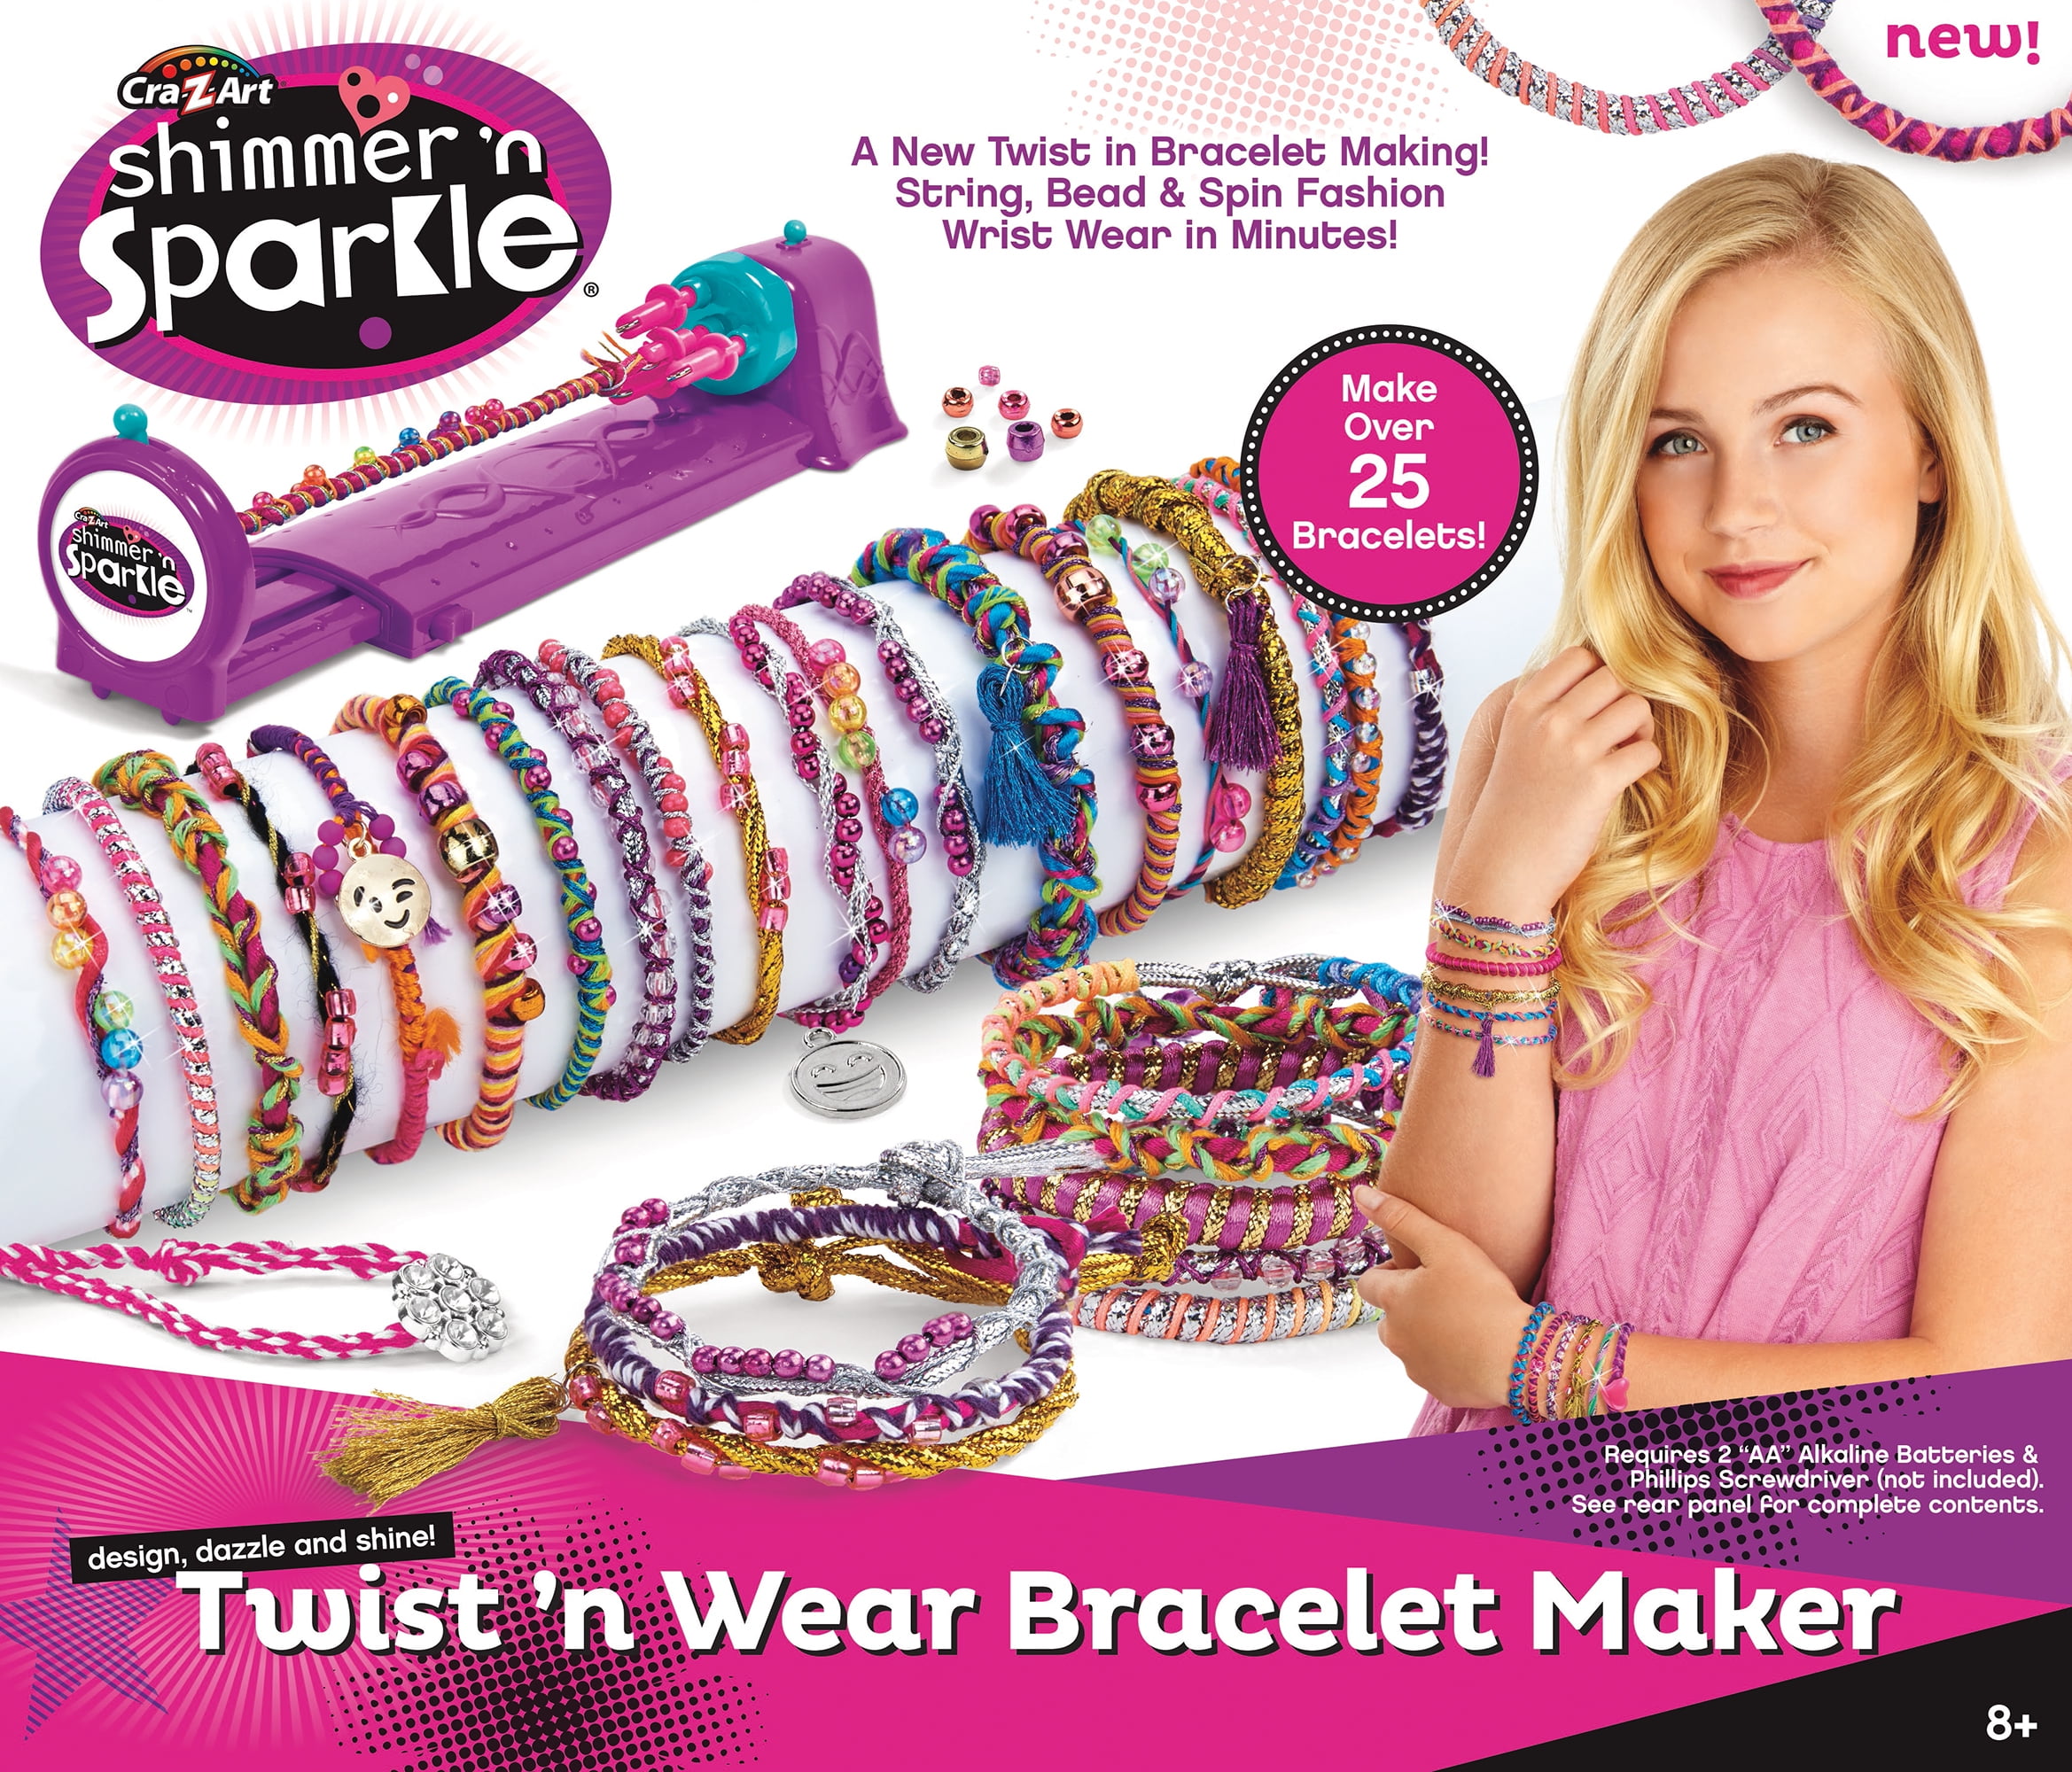 Details about   Cra Z Art Shimmer & Sparkle Magic Sequin Bracelets 2-in-1 Set Of 3 